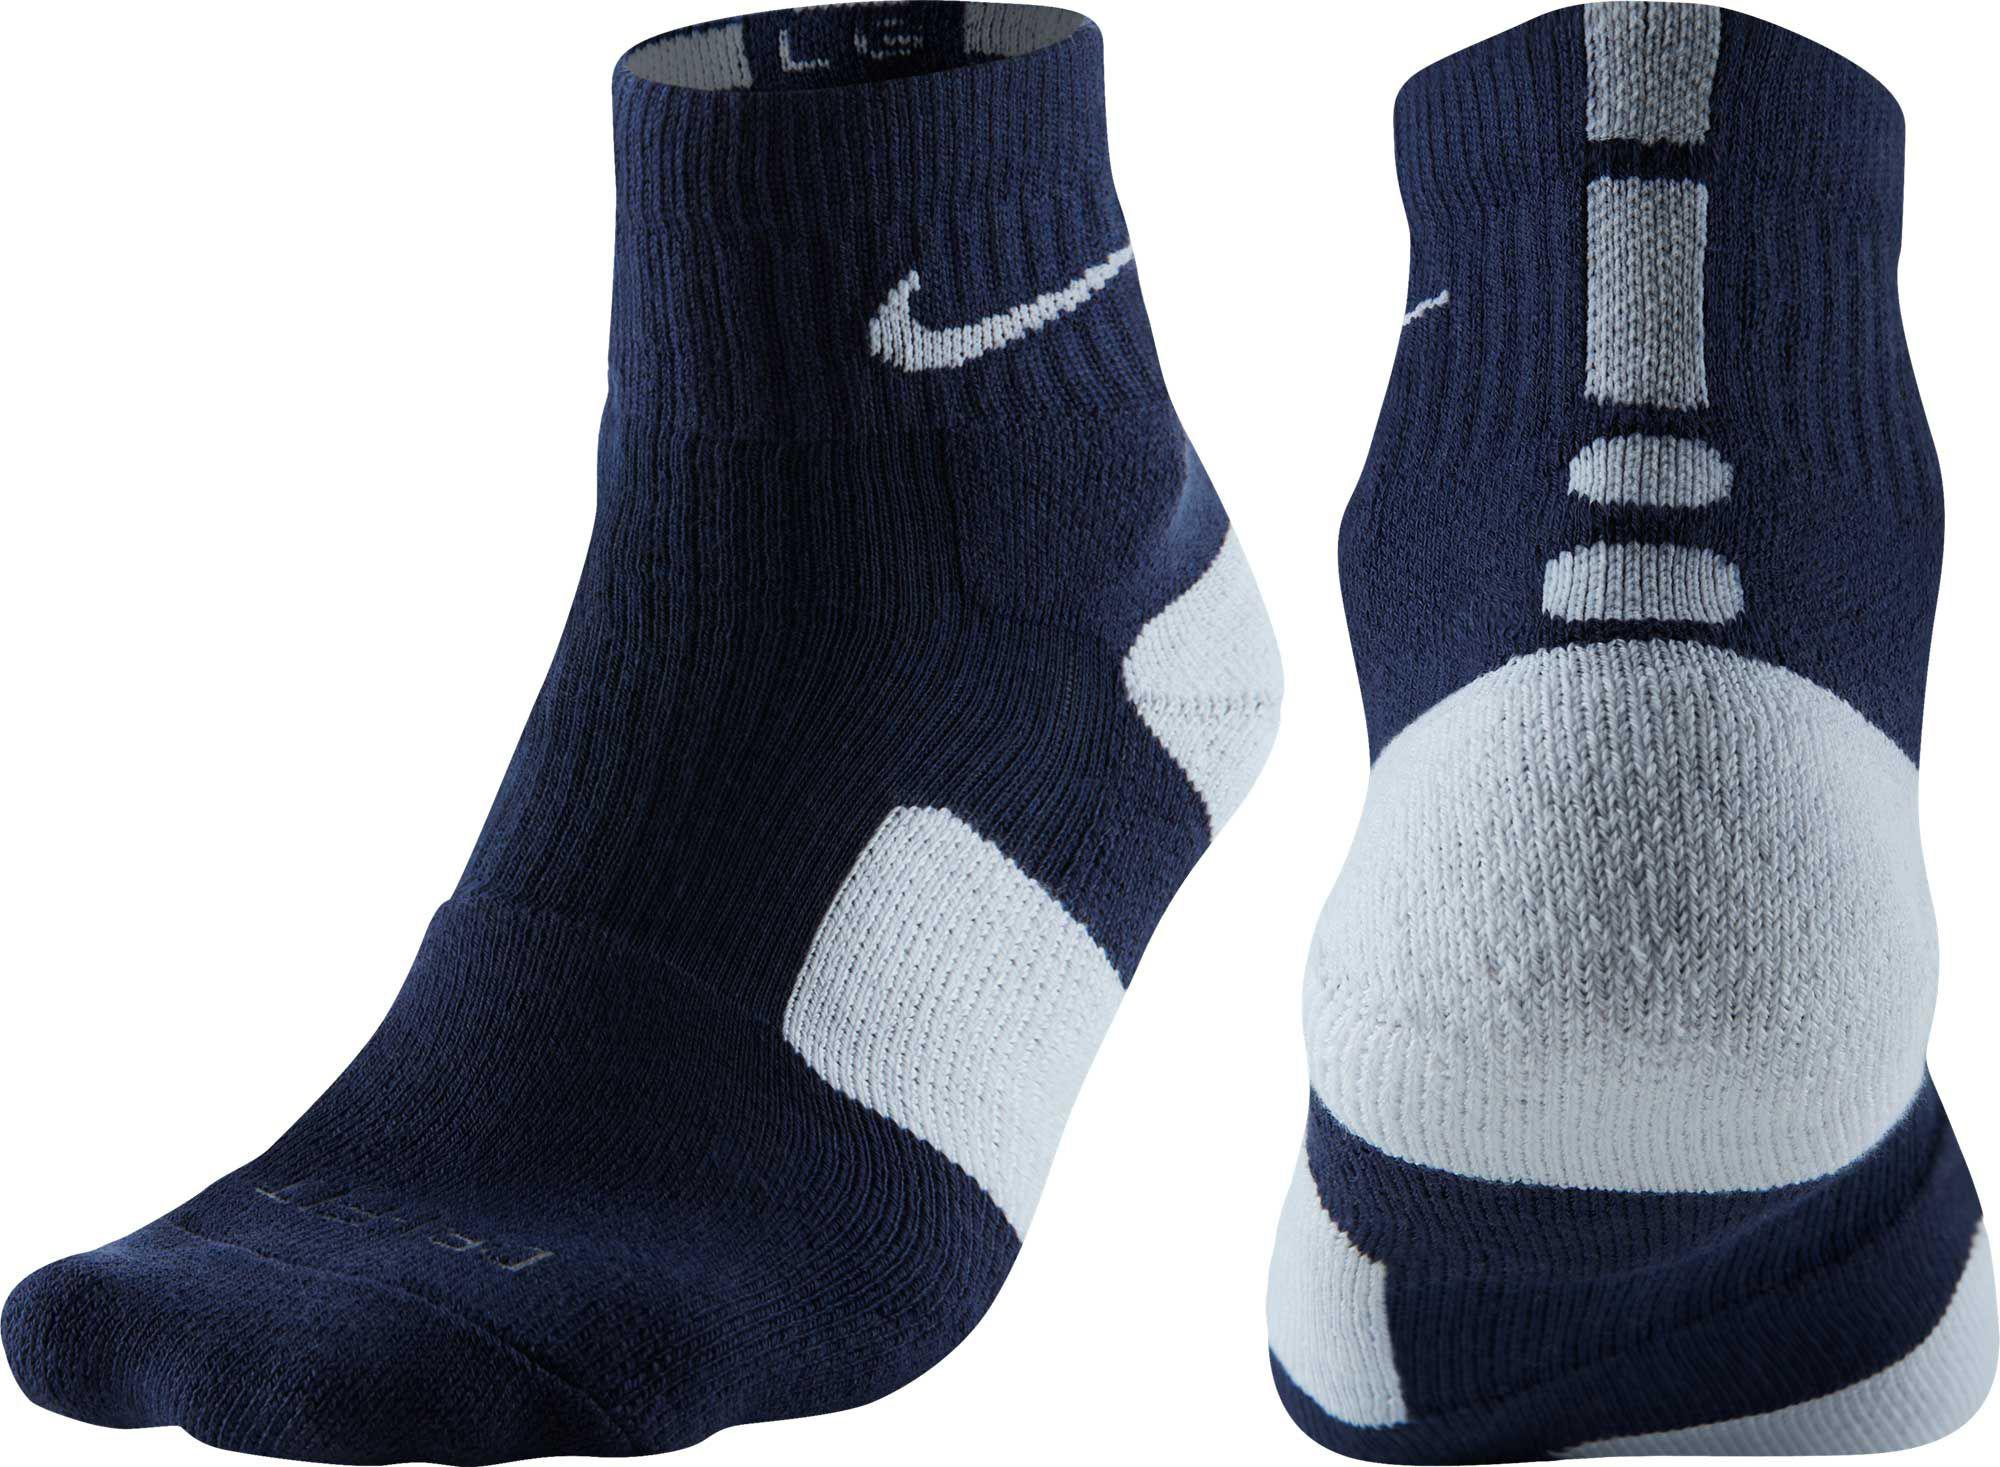 Quarter Basketball Socks in Navy 